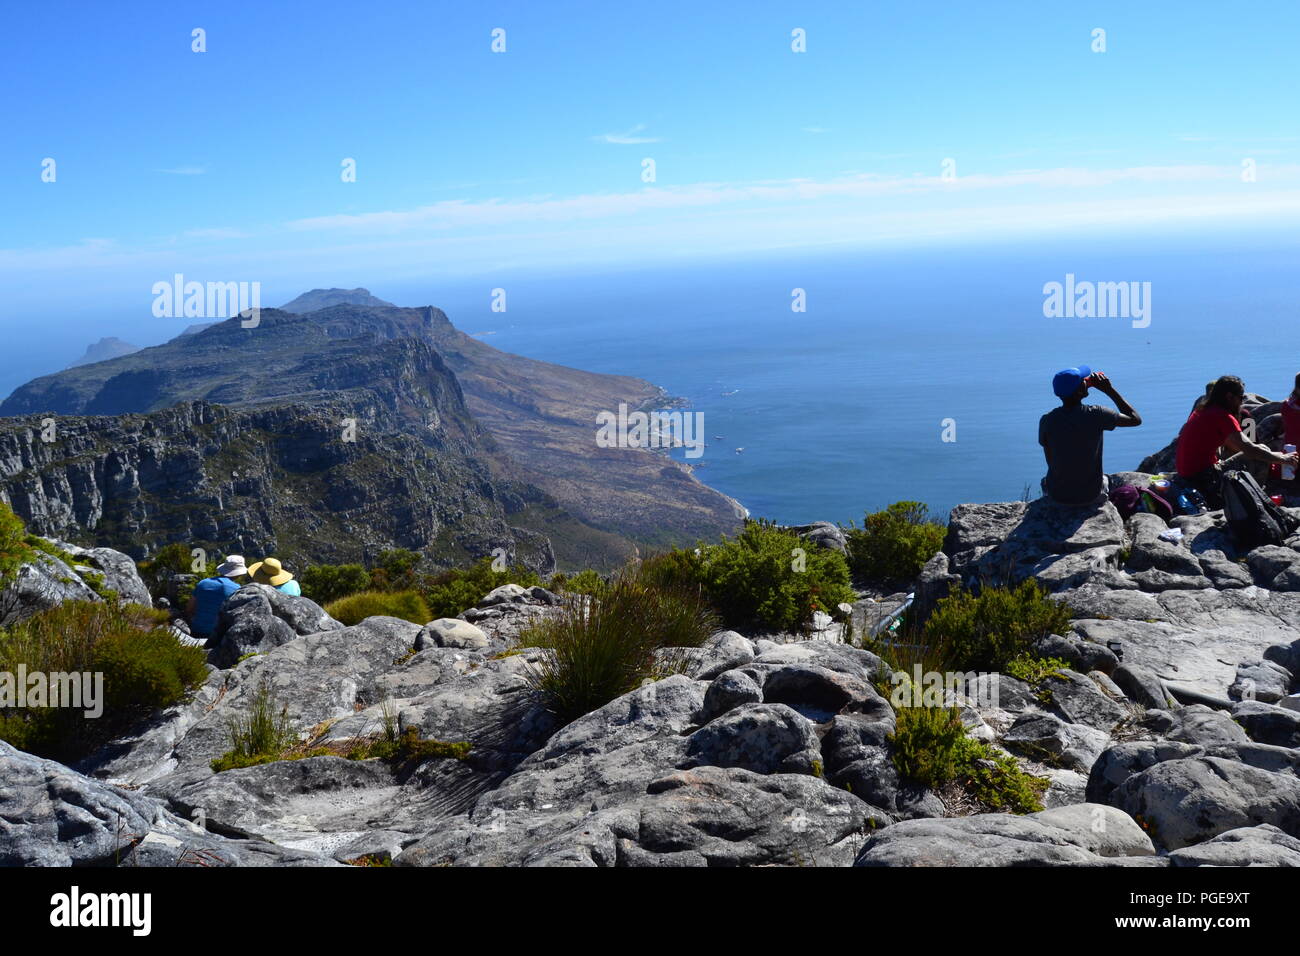 Table Mountain ist 1 der berühmten Wahrzeichen von Kapstadt. Es ist ein Muss für Touristen und Abenteurer. Lesen Sie mehr auf Marybee719.blogspot.com Stockfoto